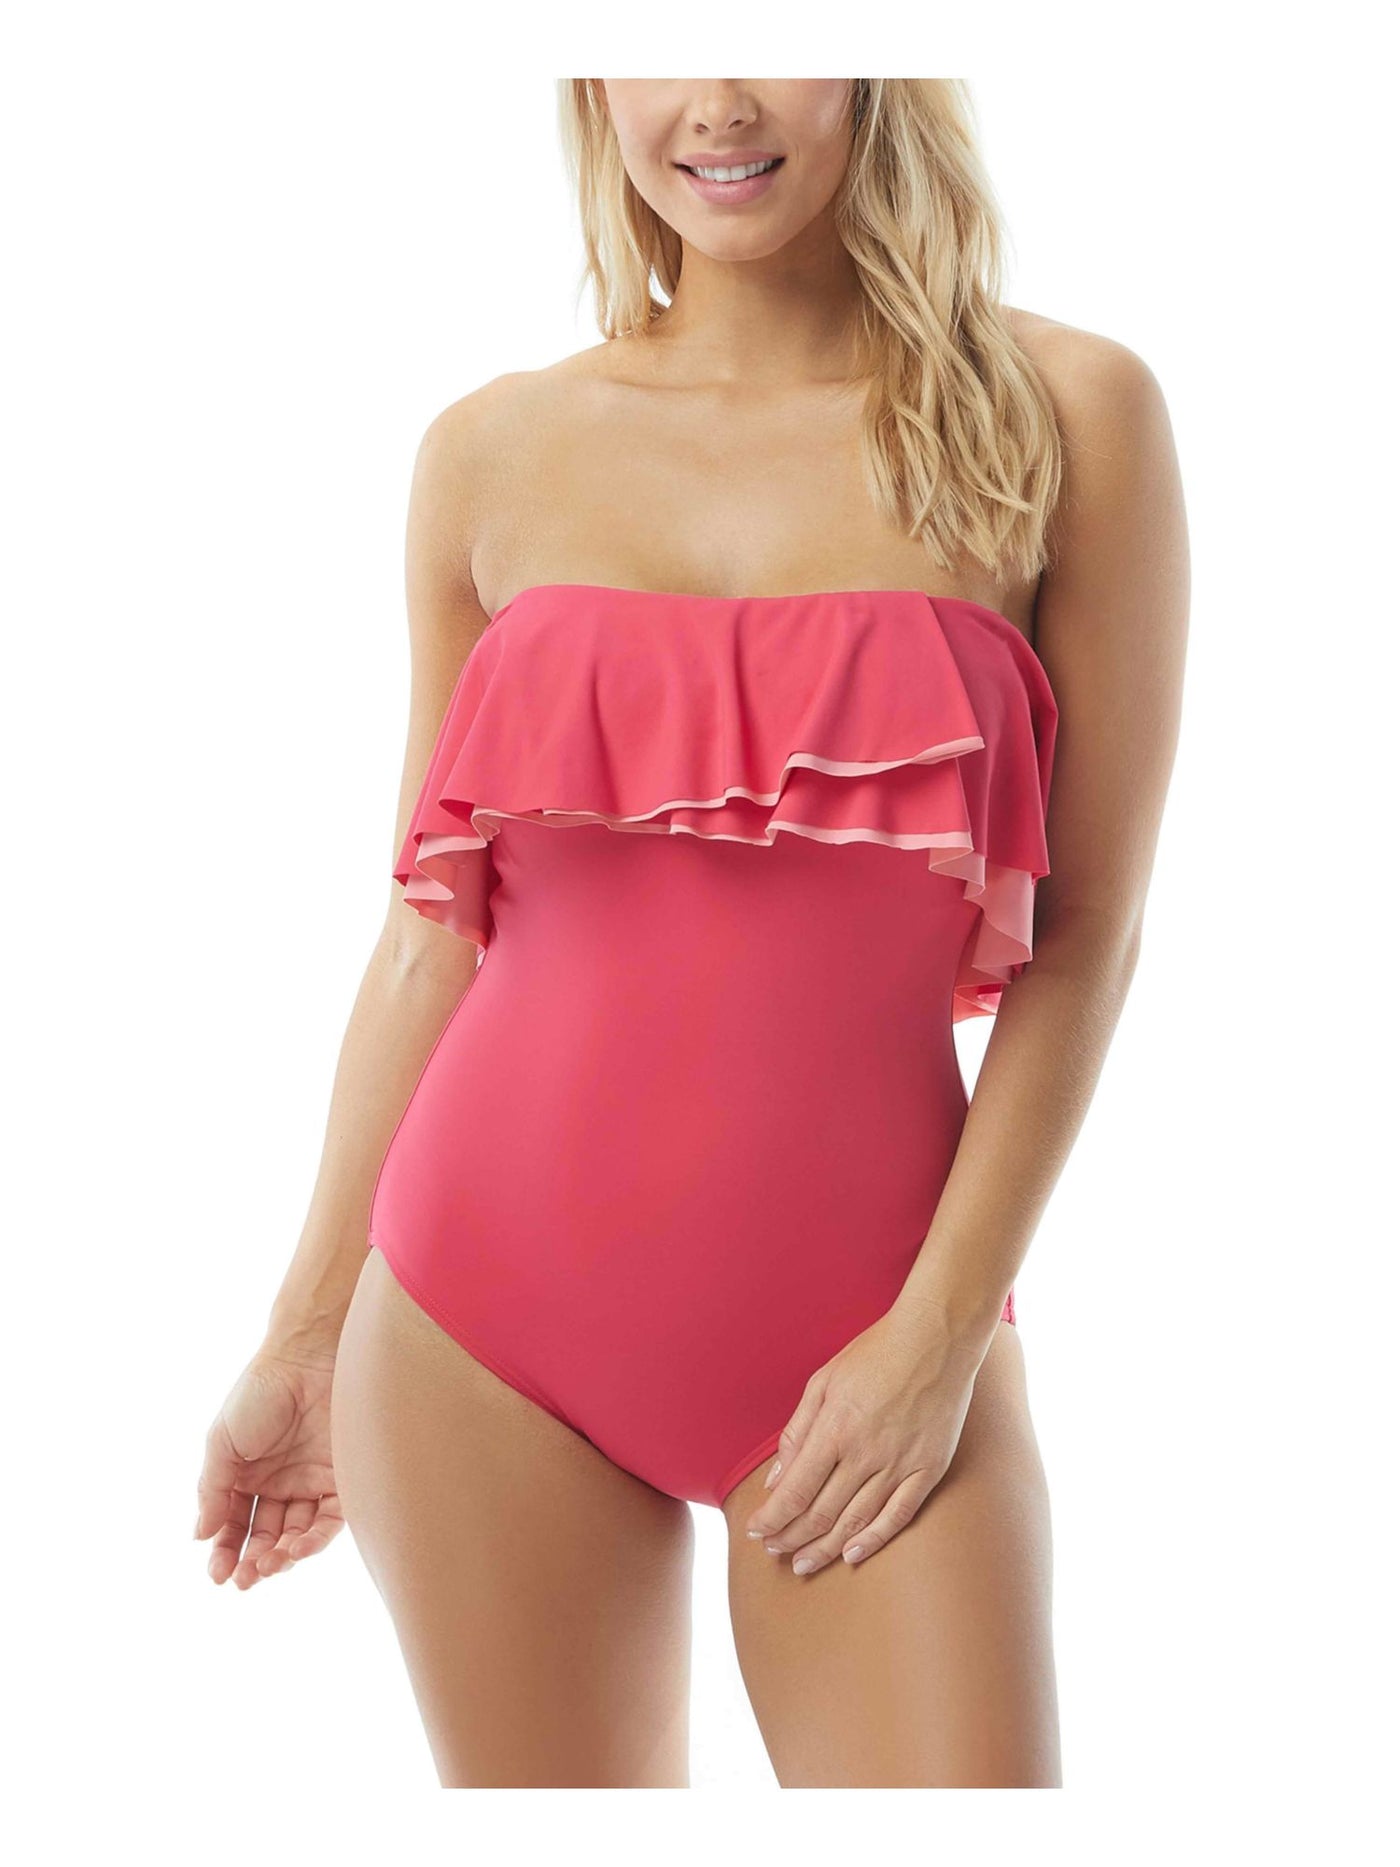 CONTOURS Women's Pink Flounced Removable Straps One Piece Swimsuit 14 38D